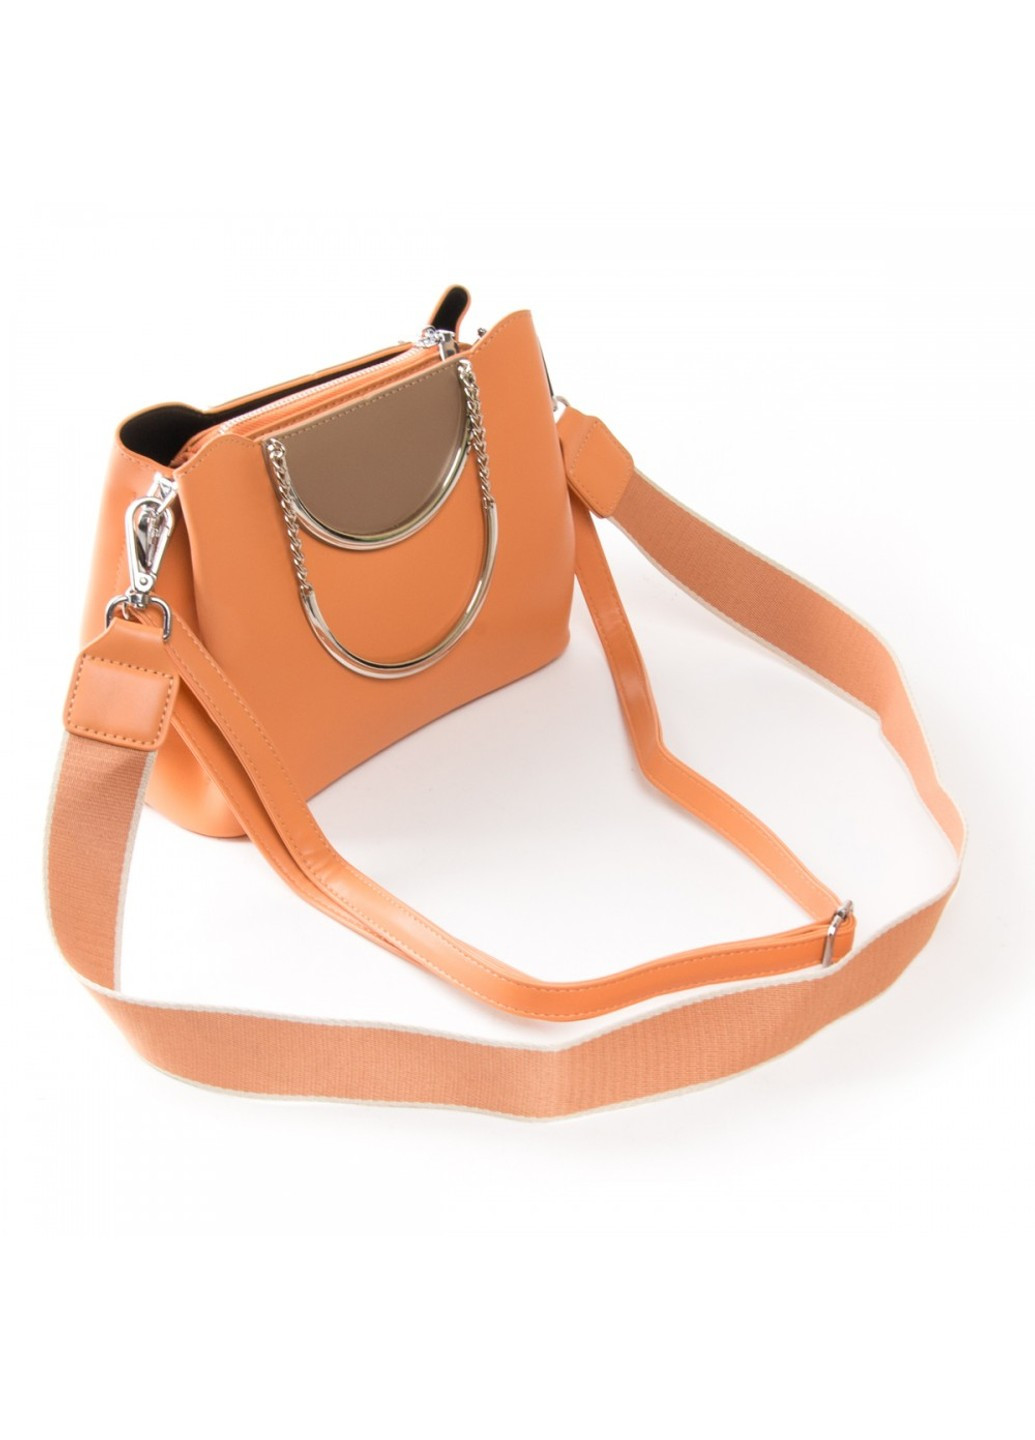 Жіноча сумочка з шкіри моди 01-06 1983 помаранчевий Fashion (261486675)